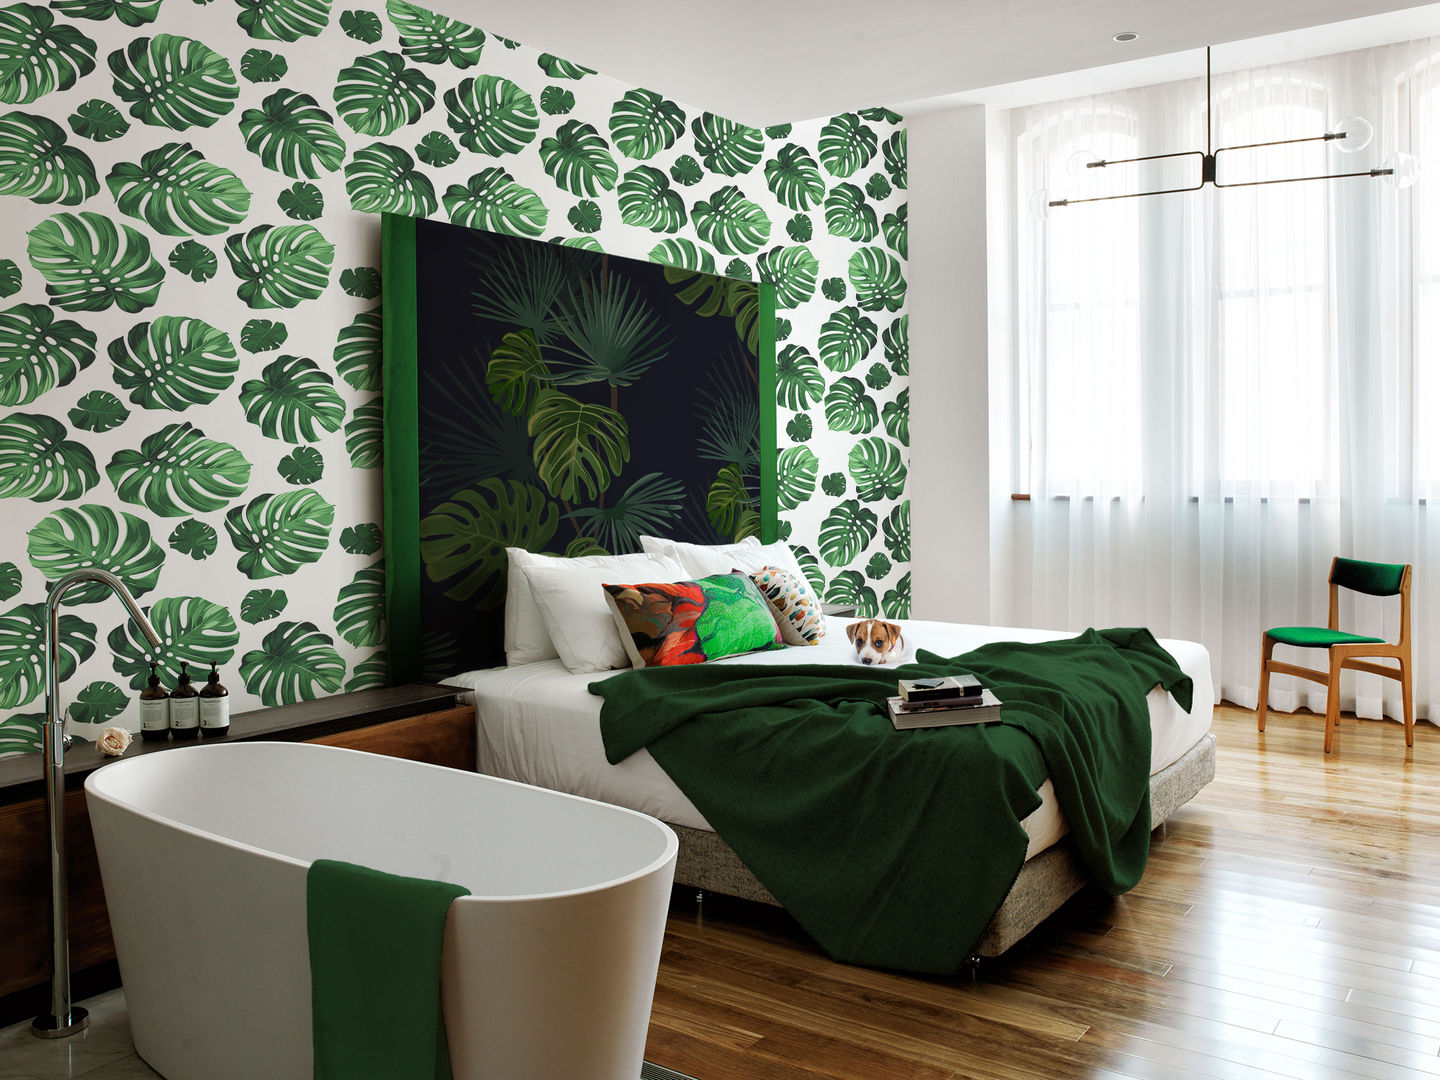 UNDER THE PALM LEAF Pixers Dormitorios de estilo tropical Accesorios y decoración